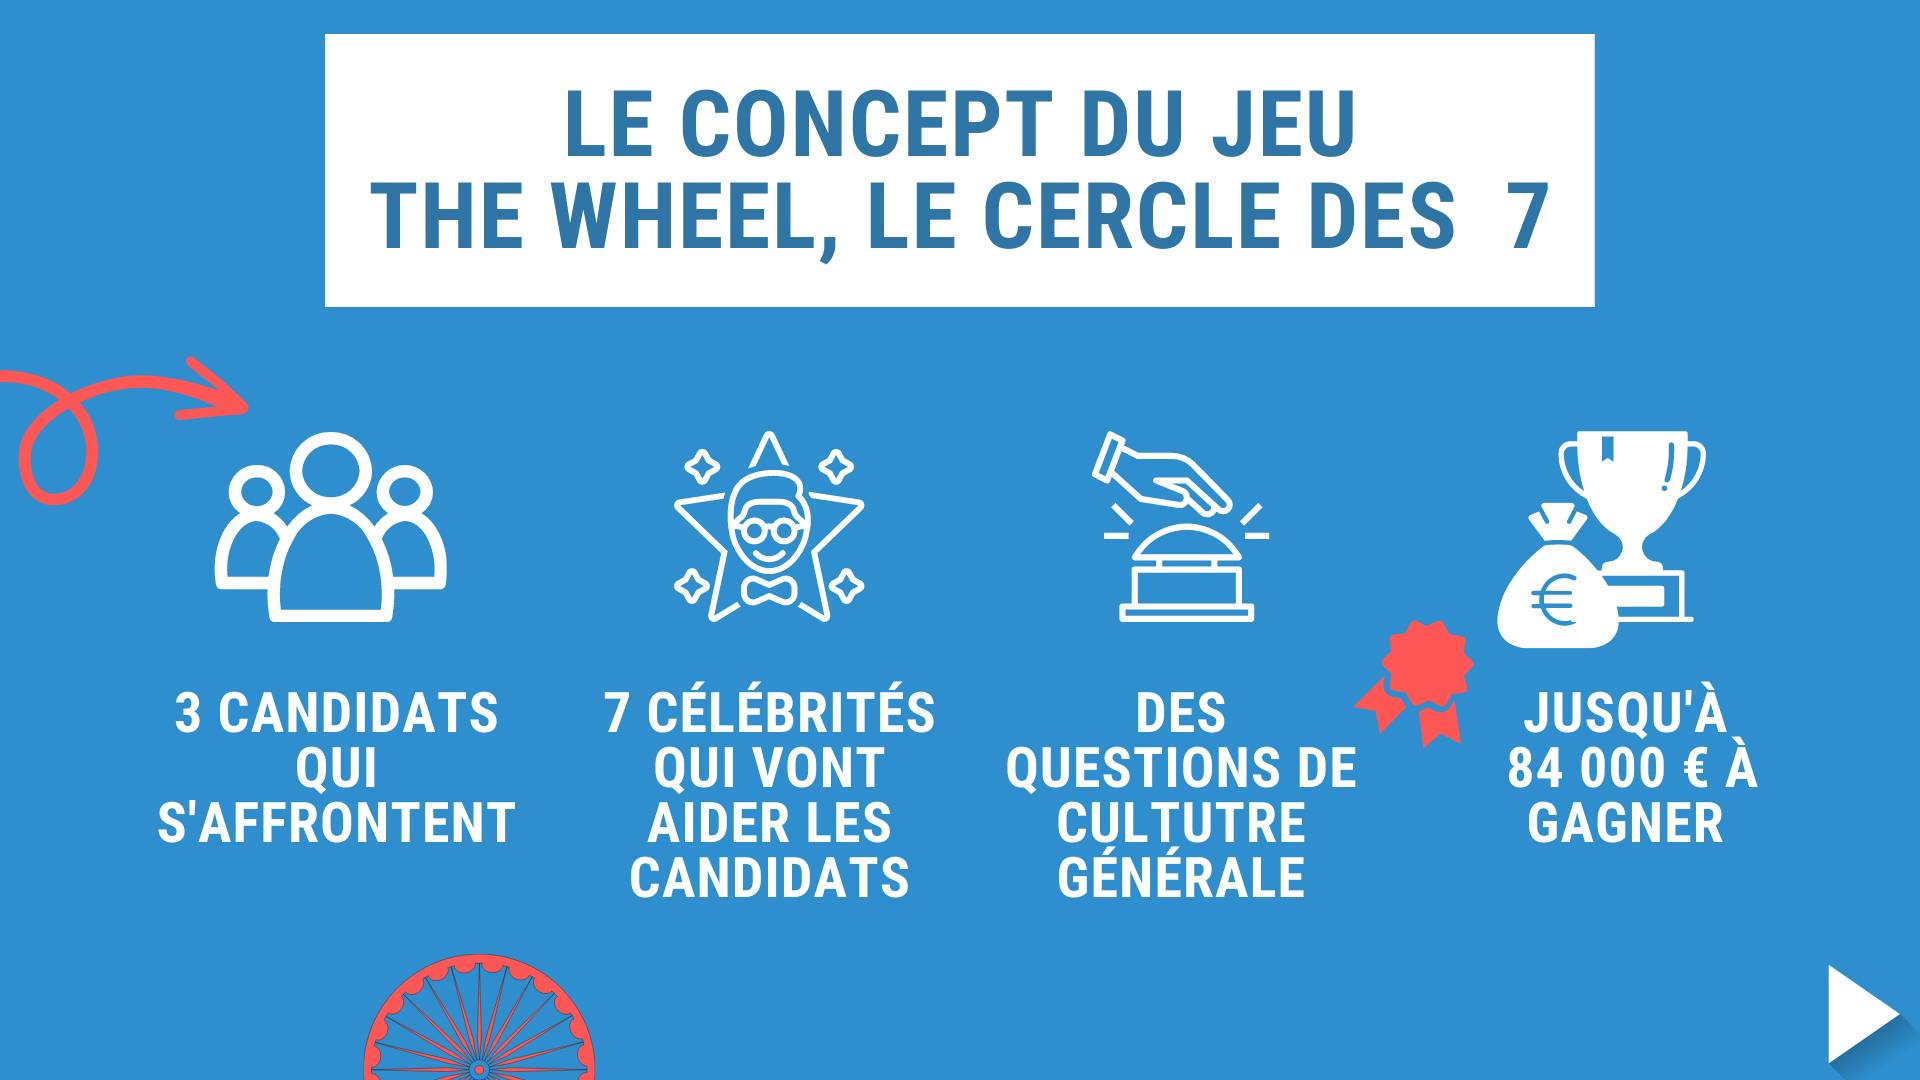 Illustration expliquant le concept du jeu the wheel, le cercle des 7 sur TF1